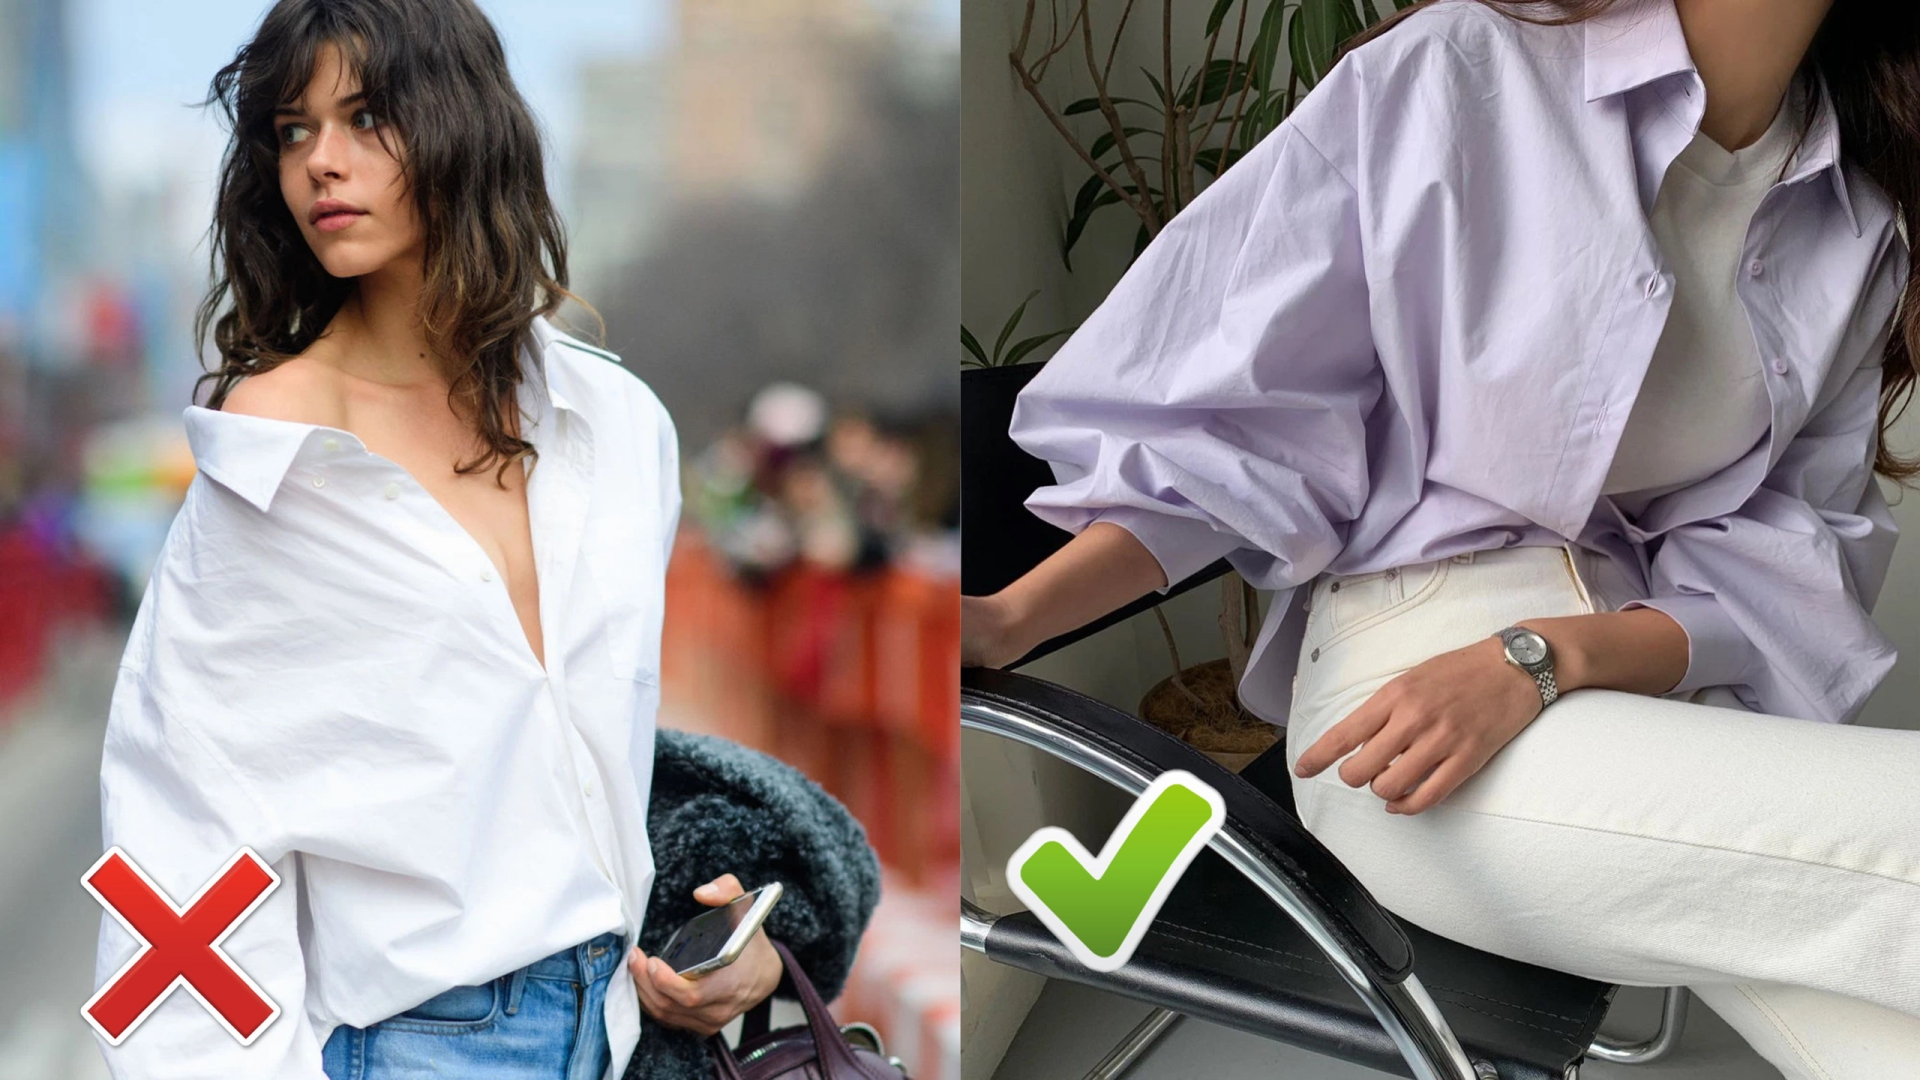 Cách an toàn nhất khi diện áo sơ mi mà vẫn trông trẻ trung đó là bạn hãy thả 1-2 chiếc khuy áo trên cùng hoặc sử dụng áo sơ mi như 1 chiếc áo khoác nhé.